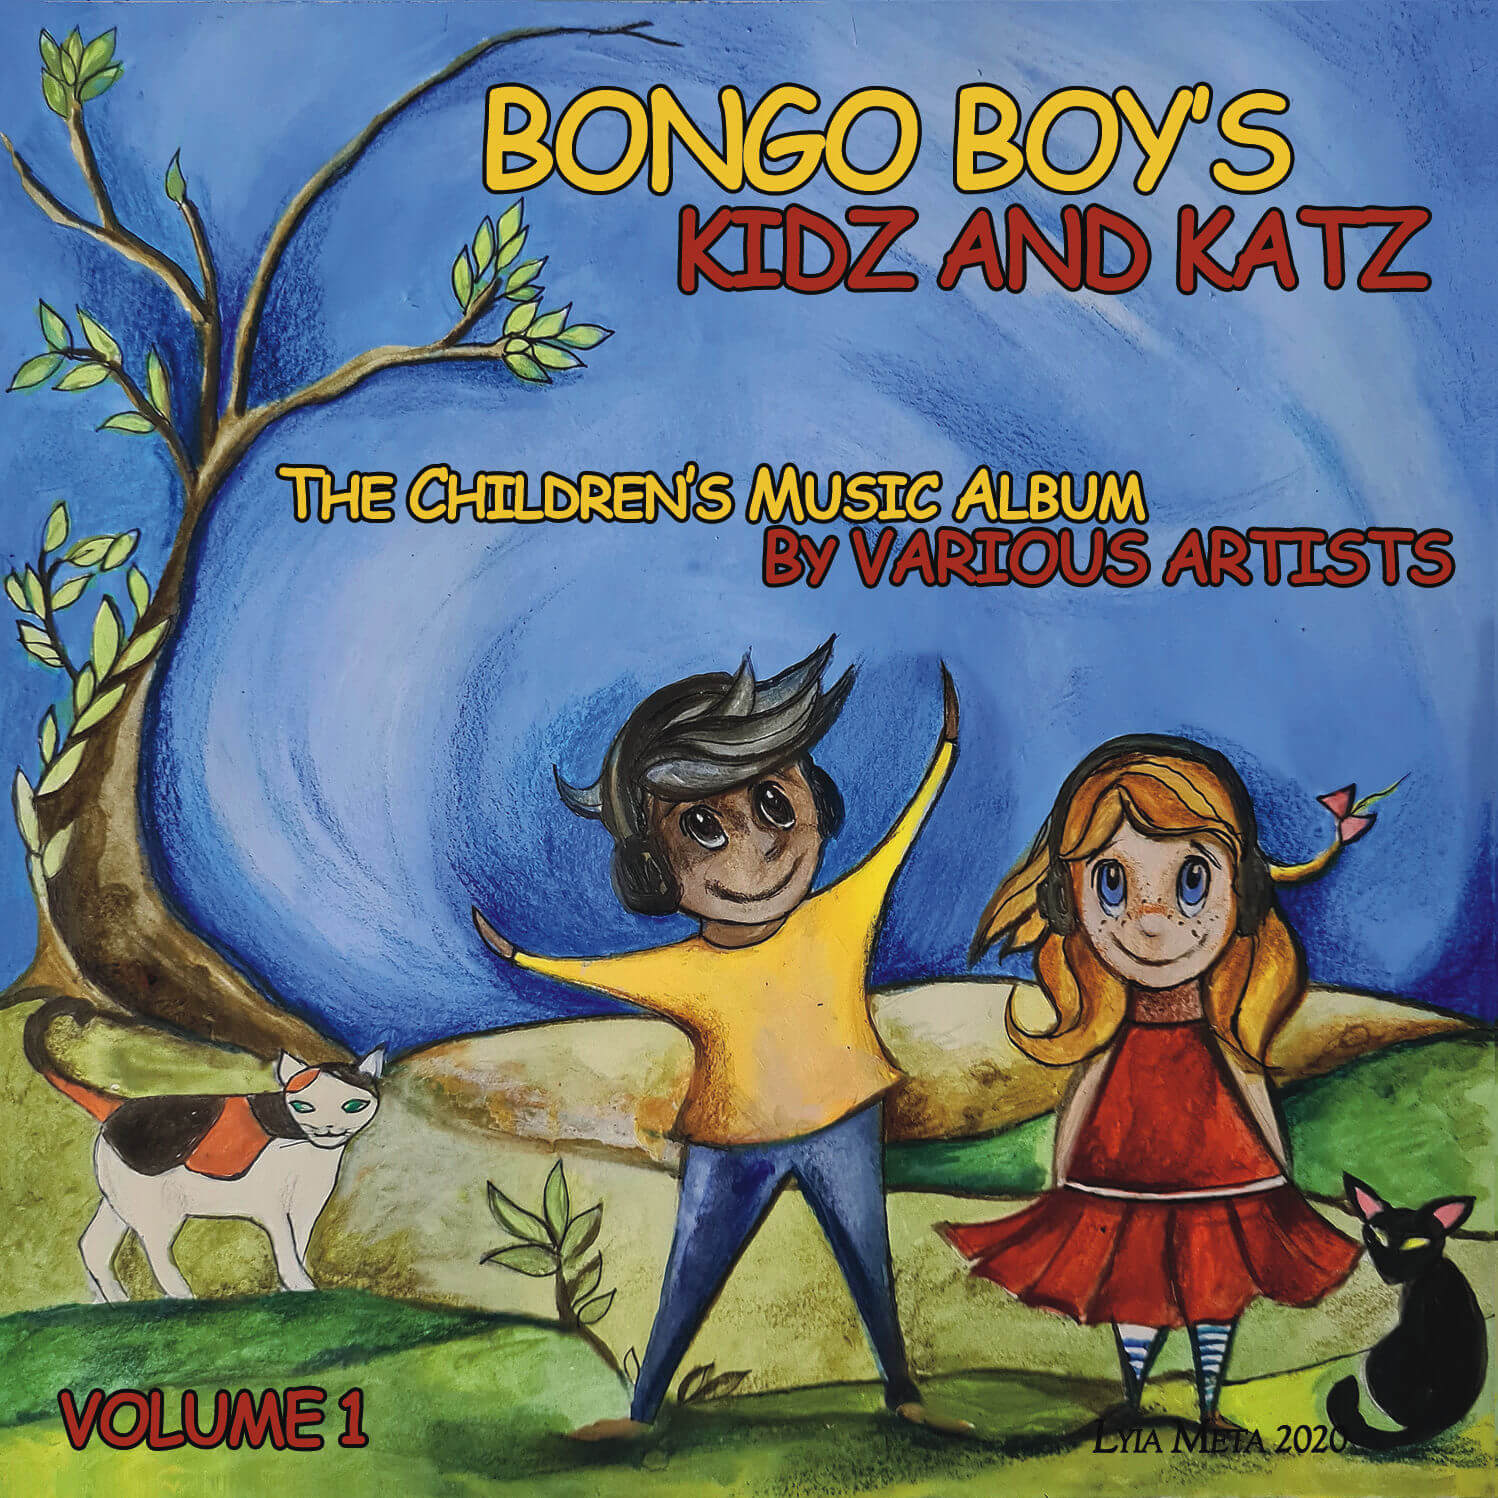 Fantastically fun children's album BONGO BOY'S KIDZ AND KATZ